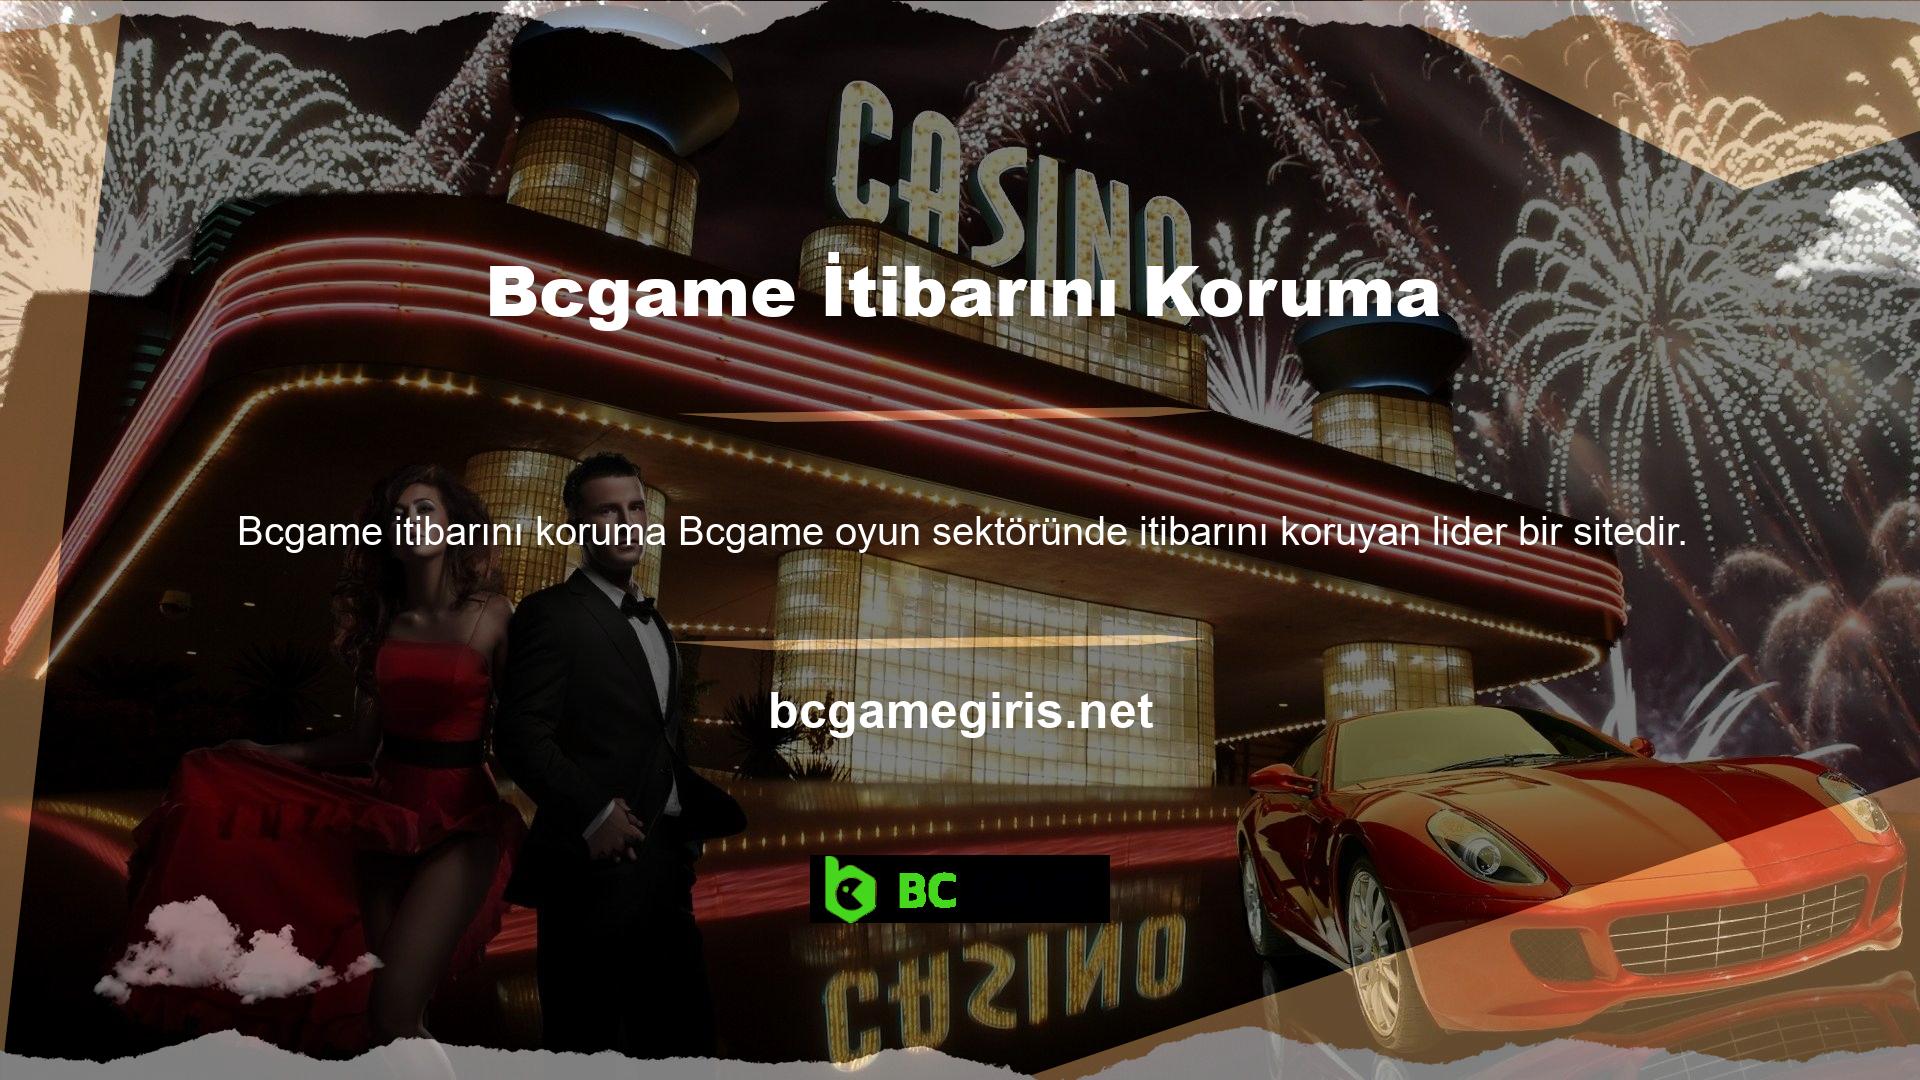 Bcgame sunduğu hızlı para yatırma ve çekme işlemleri ve casino oyunlarının çeşitliliği, kullanıcıların çoğunluğu tarafından sevilmektedir